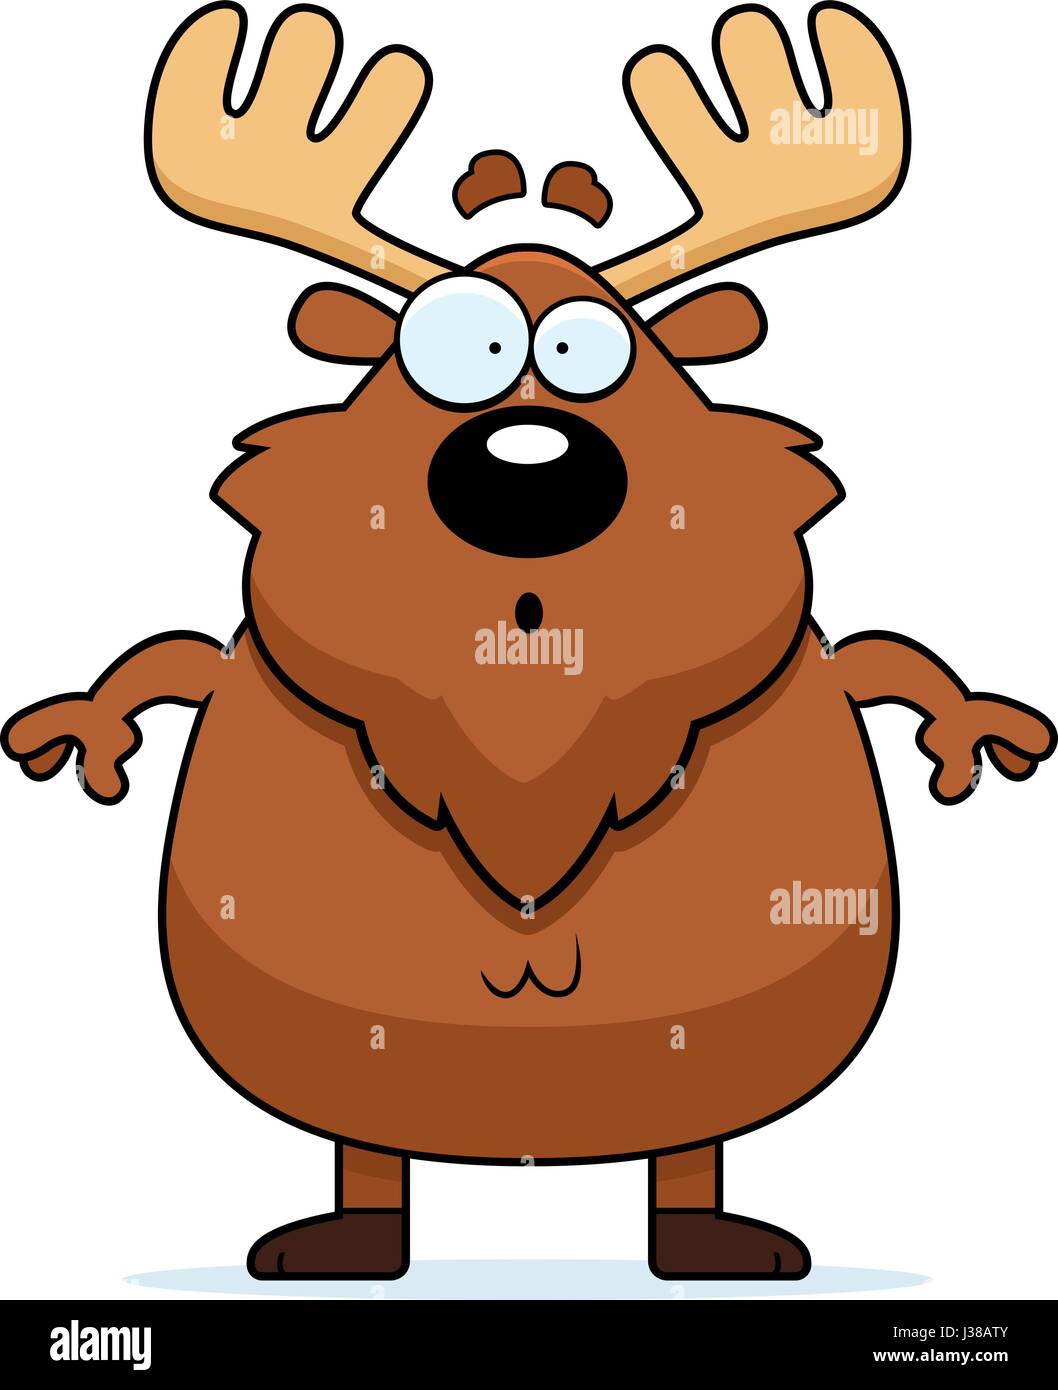 n-illustration-of-a-moose-looking-surprised-J38ATY.jpg